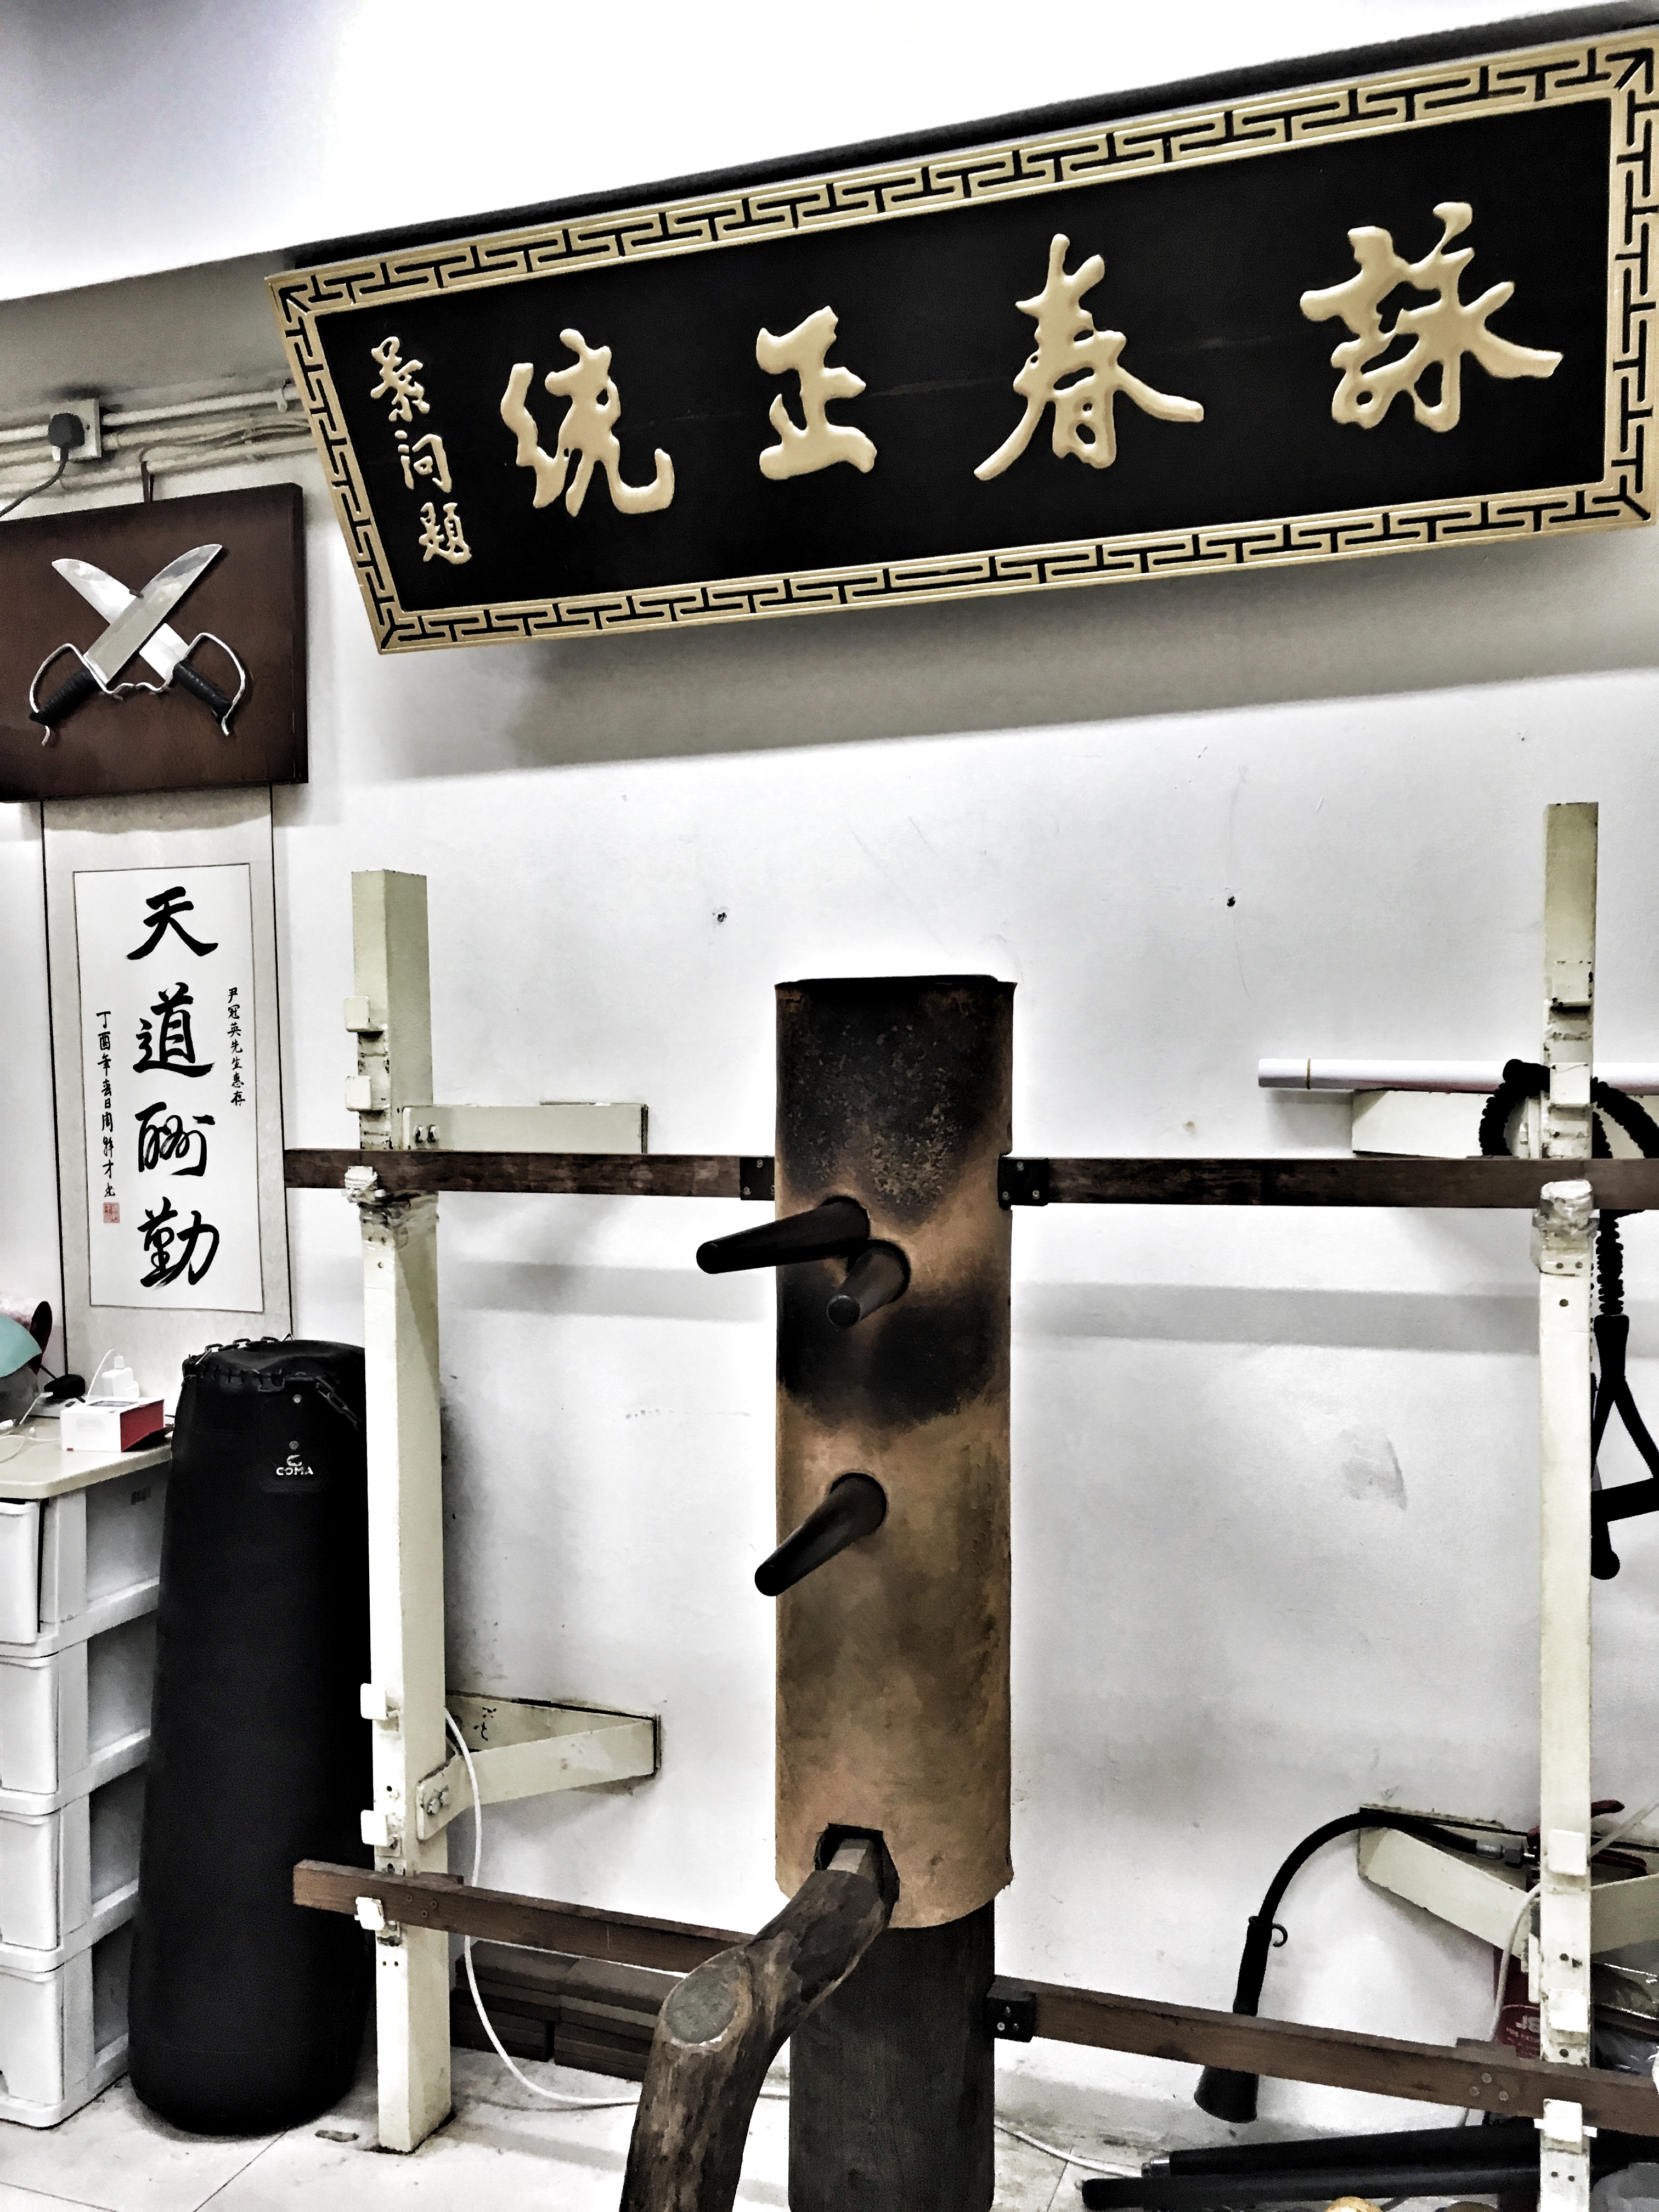 Jiu Wan Wing Chun